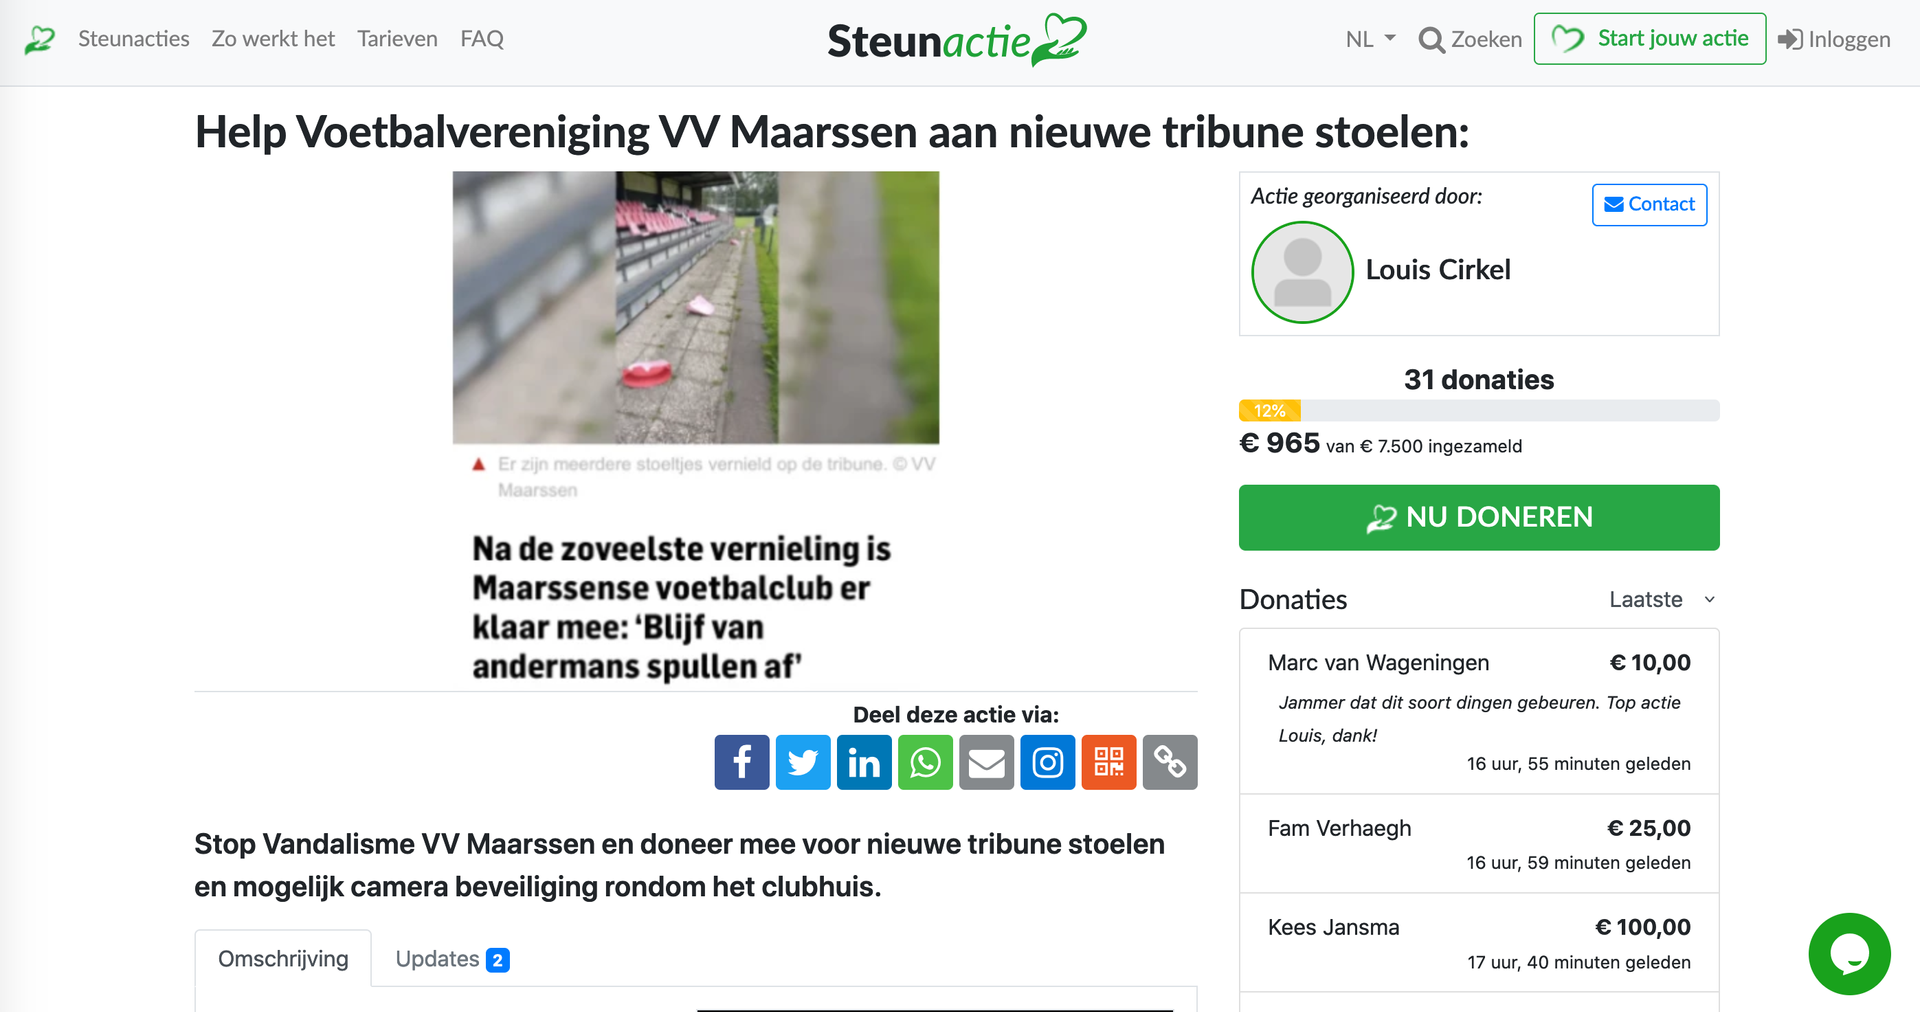 Selectiekader Lijkt op Stad bloem RTV Stichtse Vecht - Voetbalvereniging Maarssen start crowdfundingsactie  voor nieuwe tribunestoelen na vandalisme